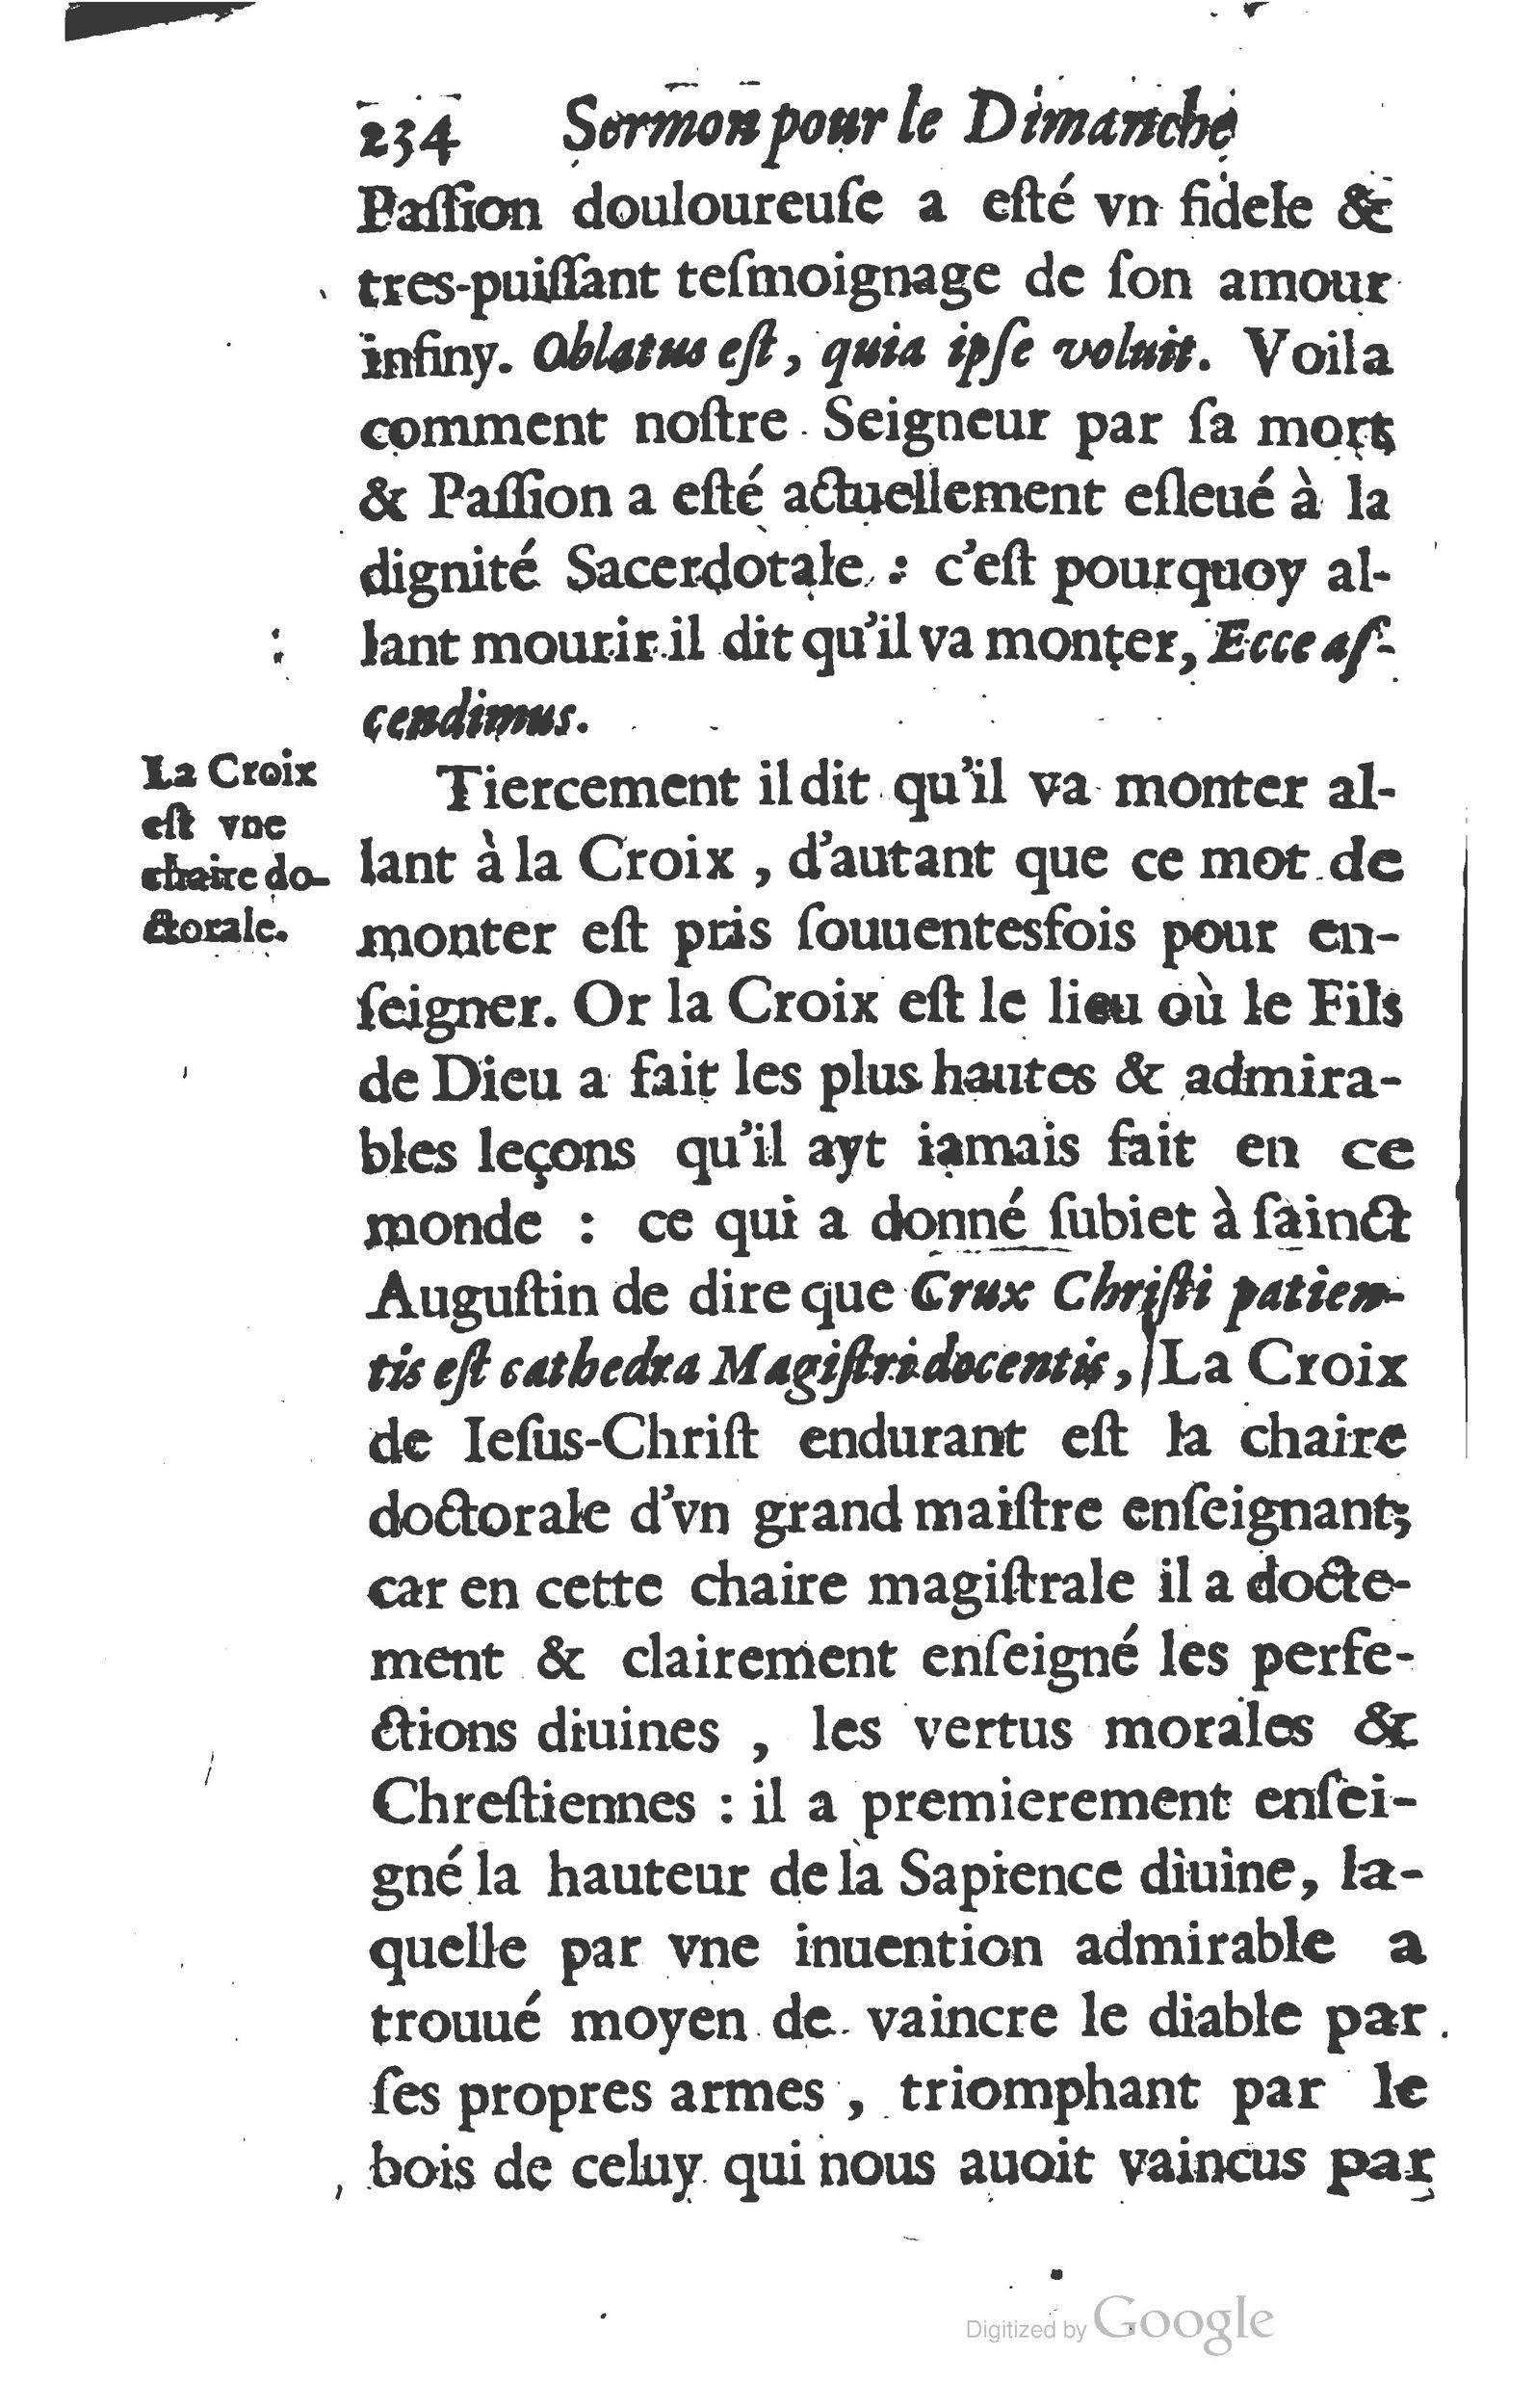 1629 Sermons ou trésor de la piété chrétienne_Page_257.jpg